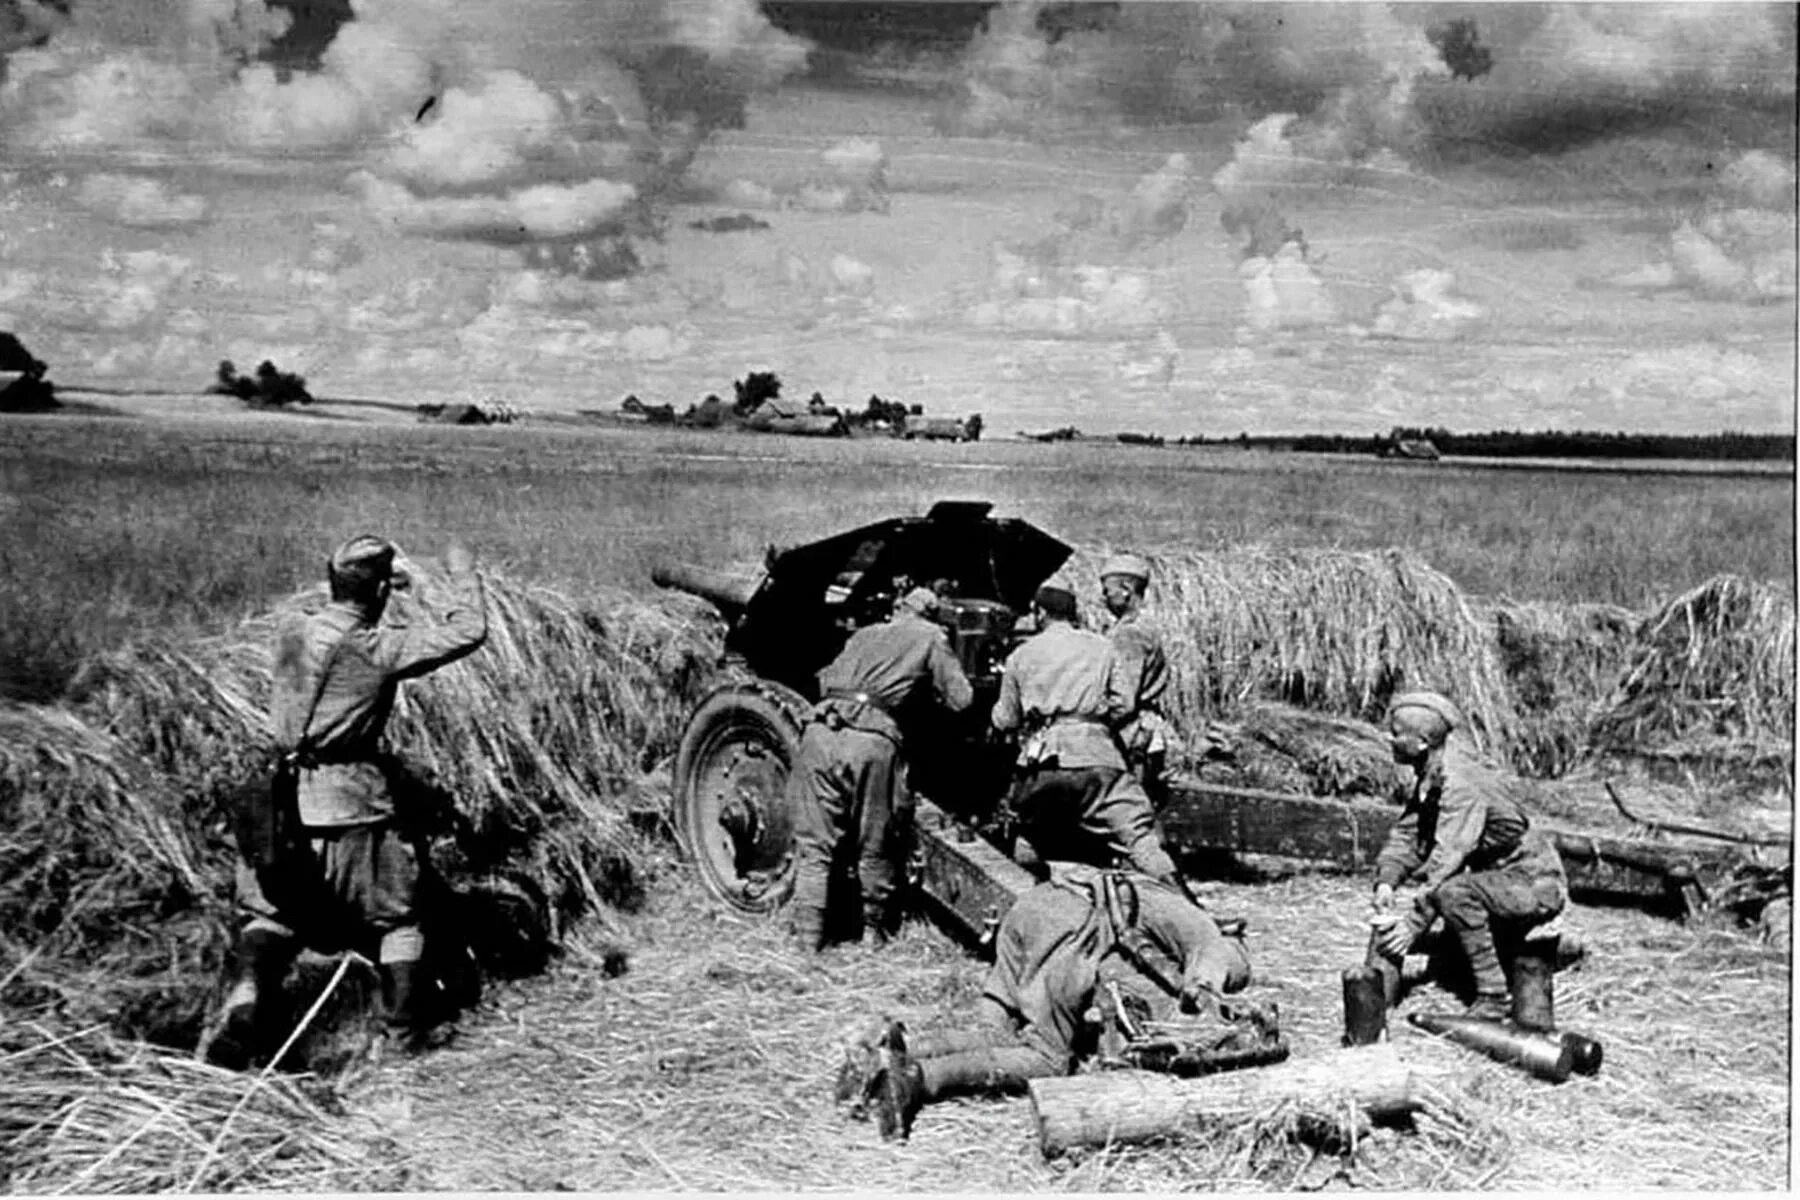 Нападение на поле. Белорусский фронт 1944. Ржевская битва ВОВ 1941-1945.